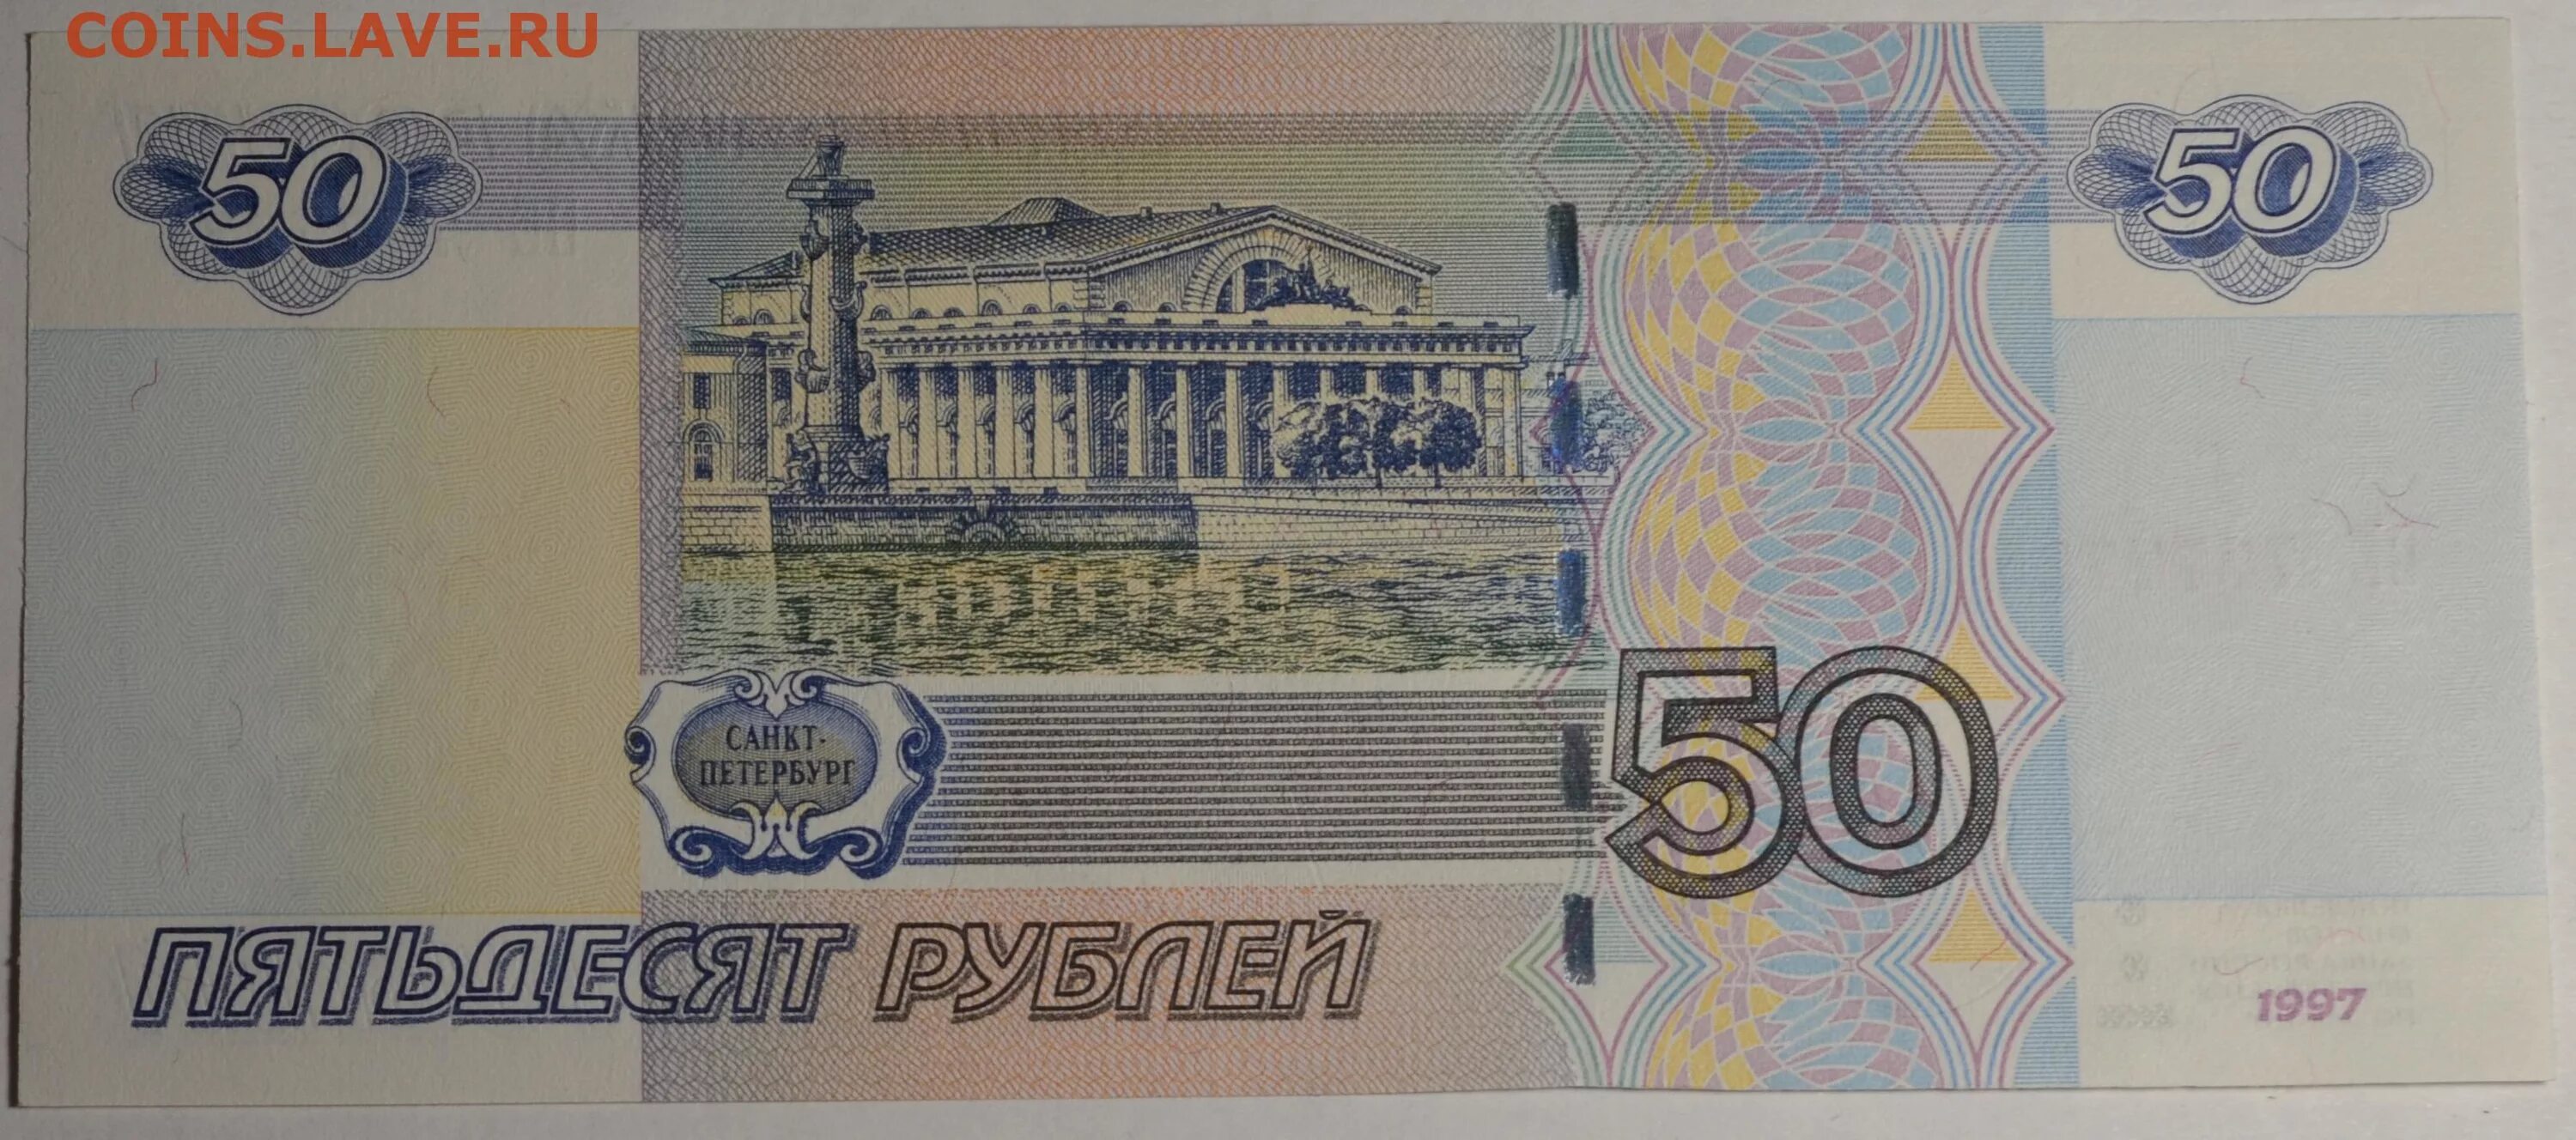 Банкнота 50 рублей. Деньги 50 рублей. 50 Рублевая купюра. Бумажные деньги 50 рублей. Лицевая сторона денег